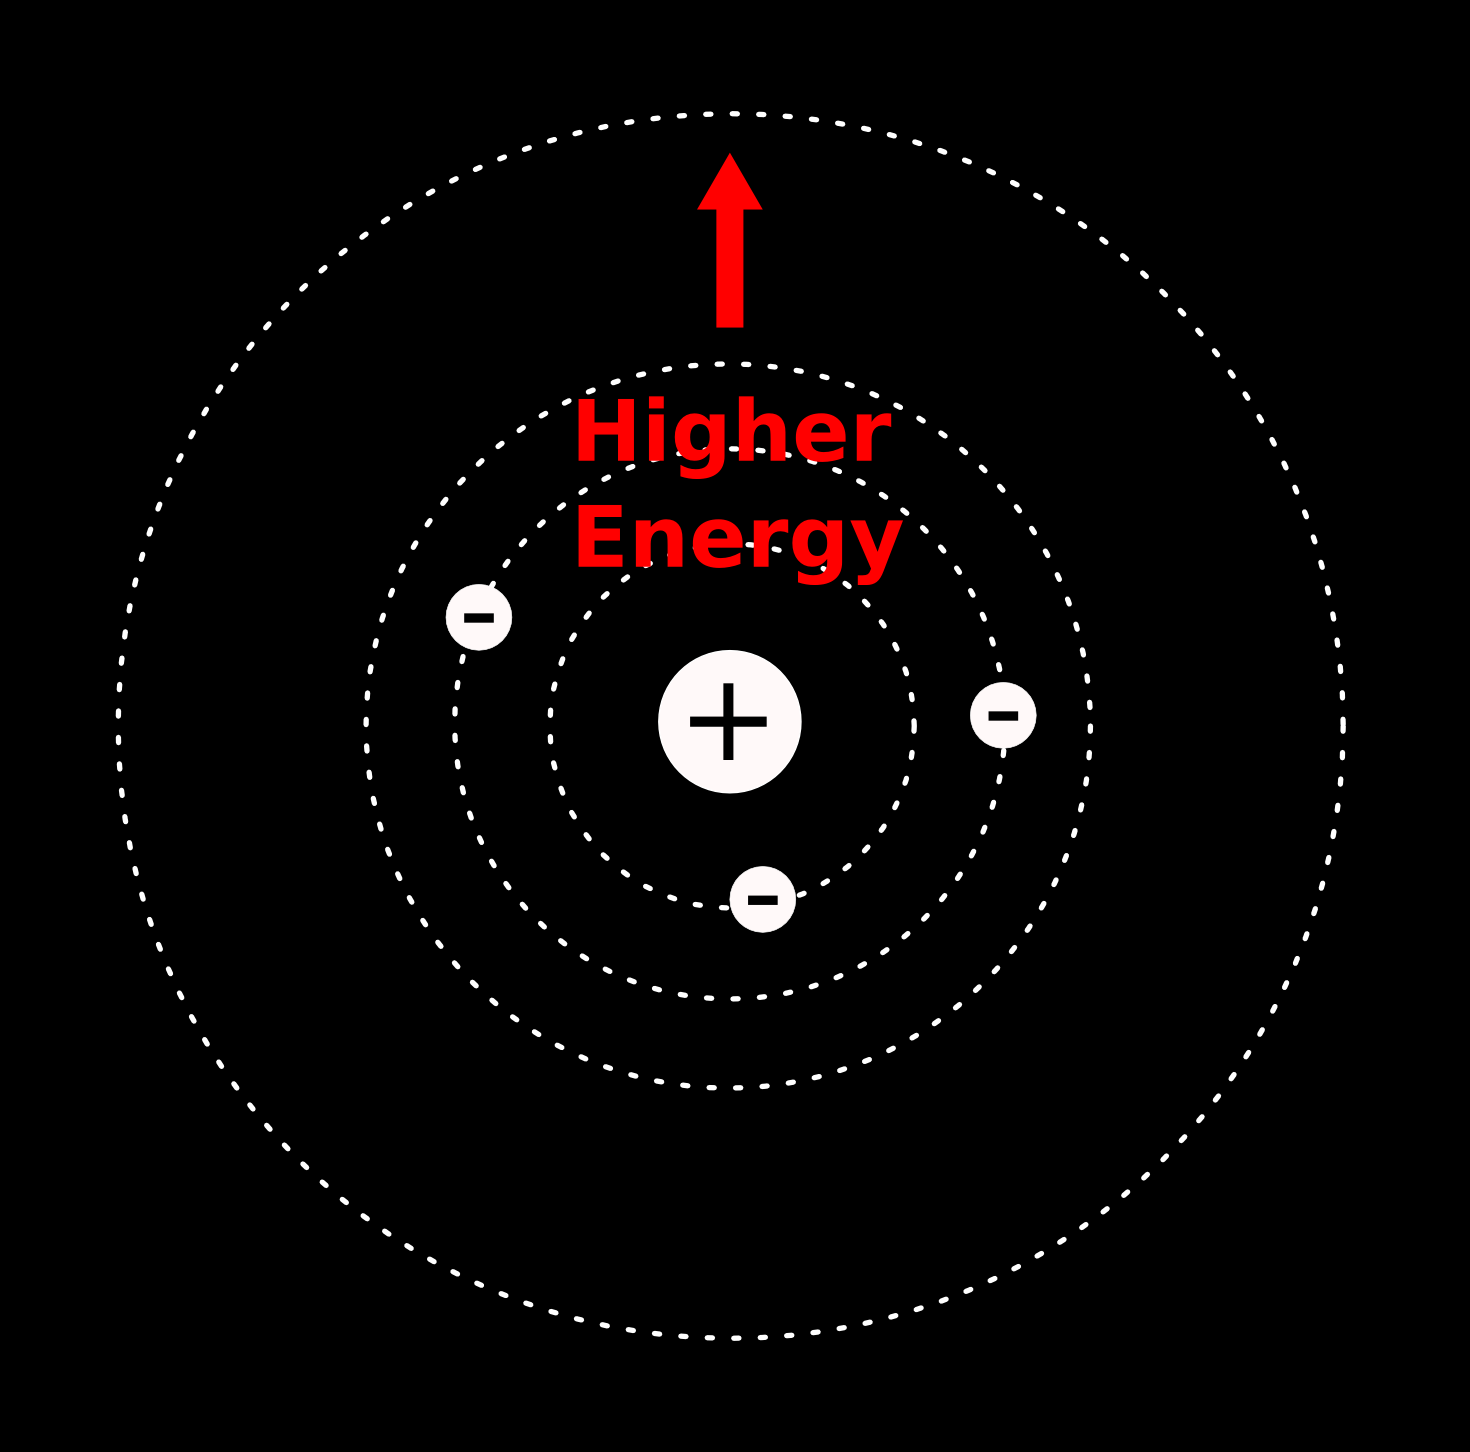 Atomic energy levels